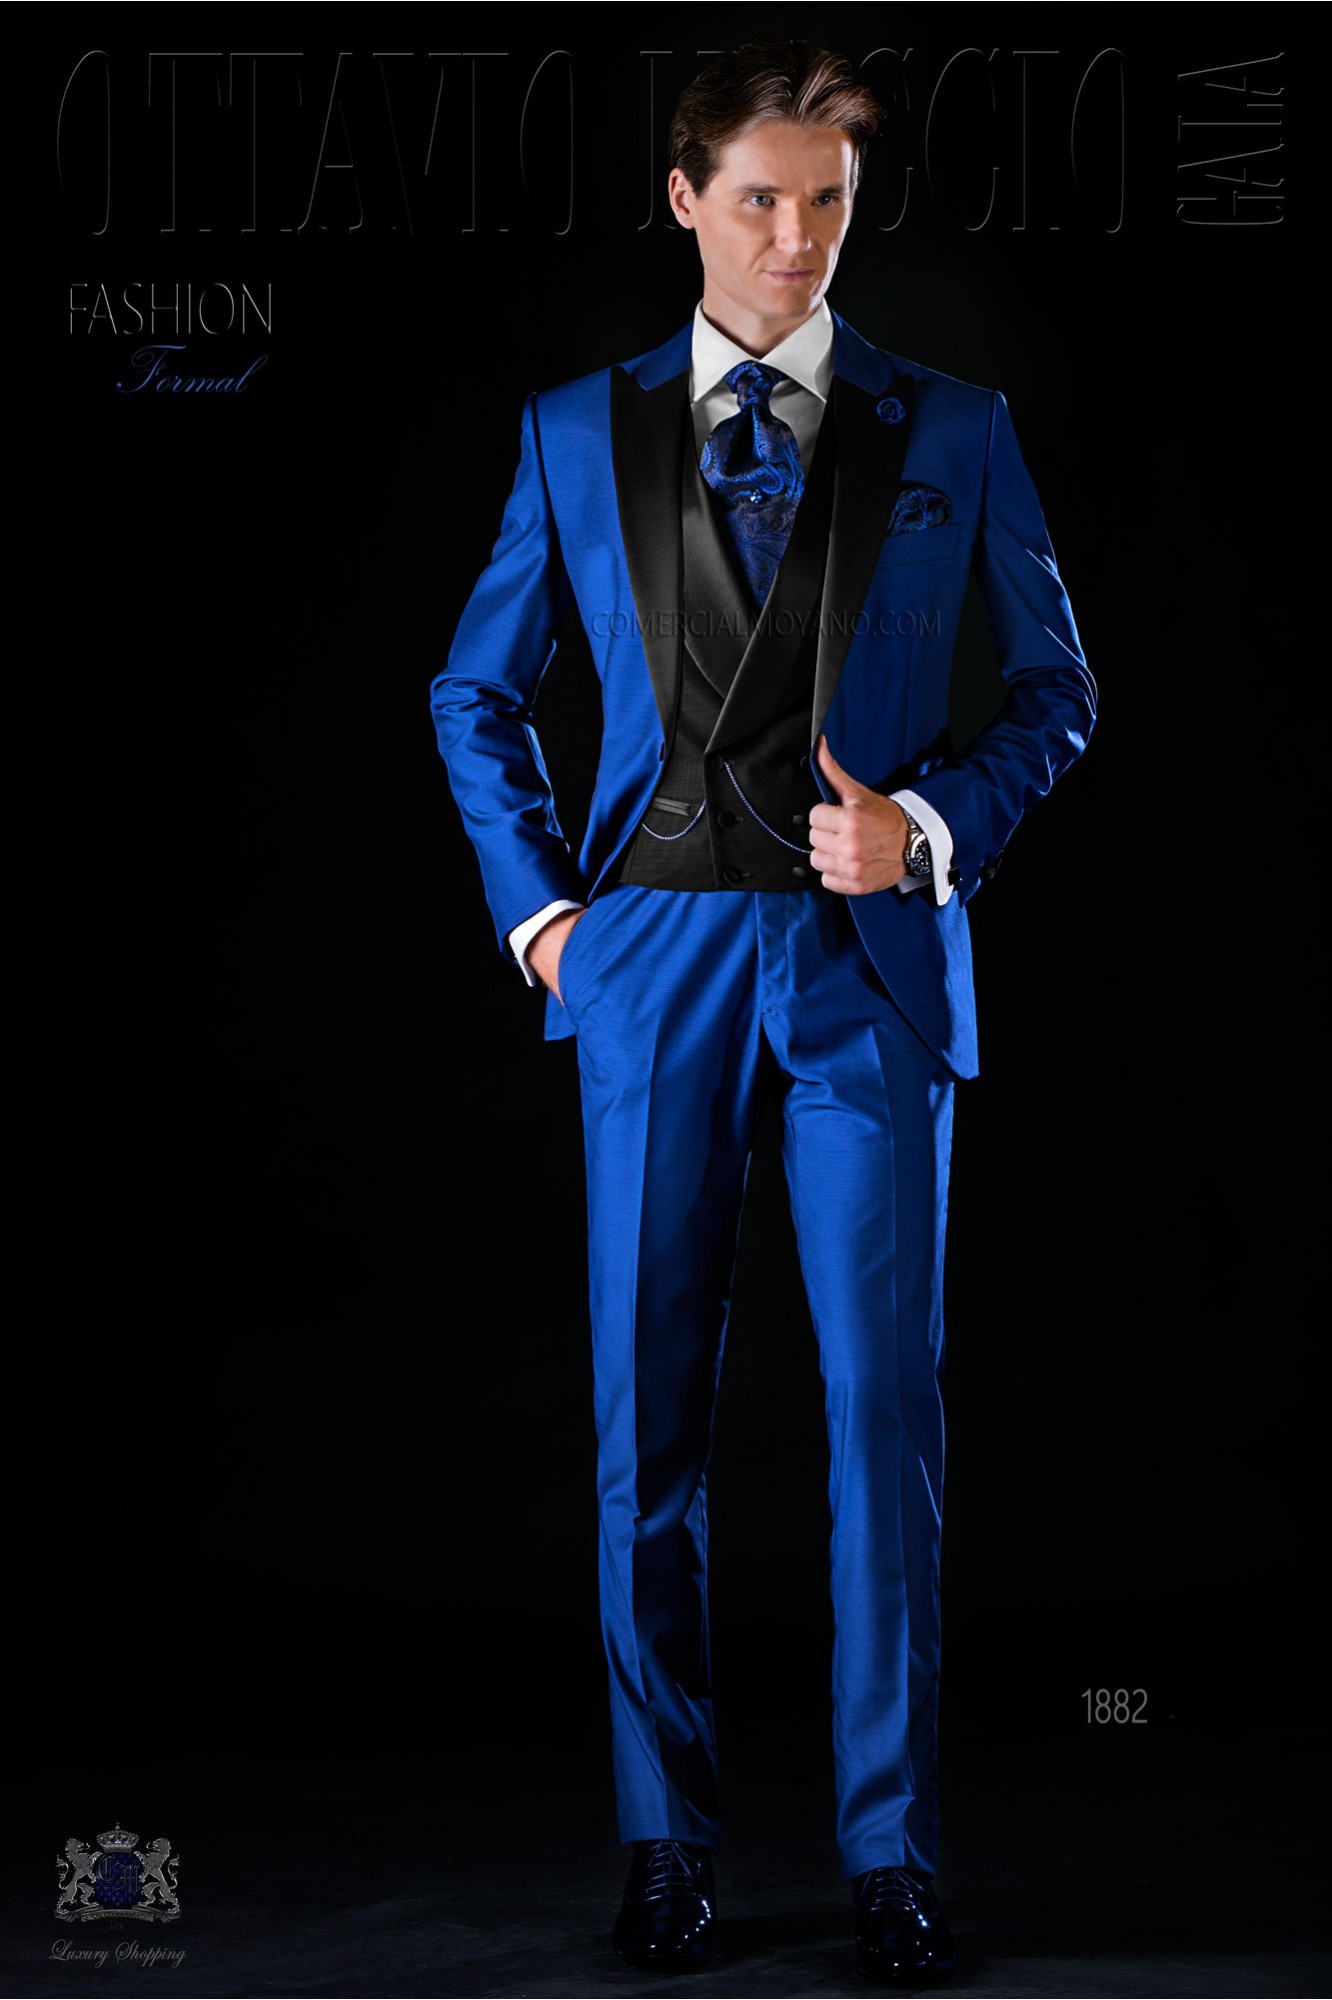 Traje de novio moderno azul eléctrico con solapa negra modelo: 1882 Mario Moyano colección Fashion